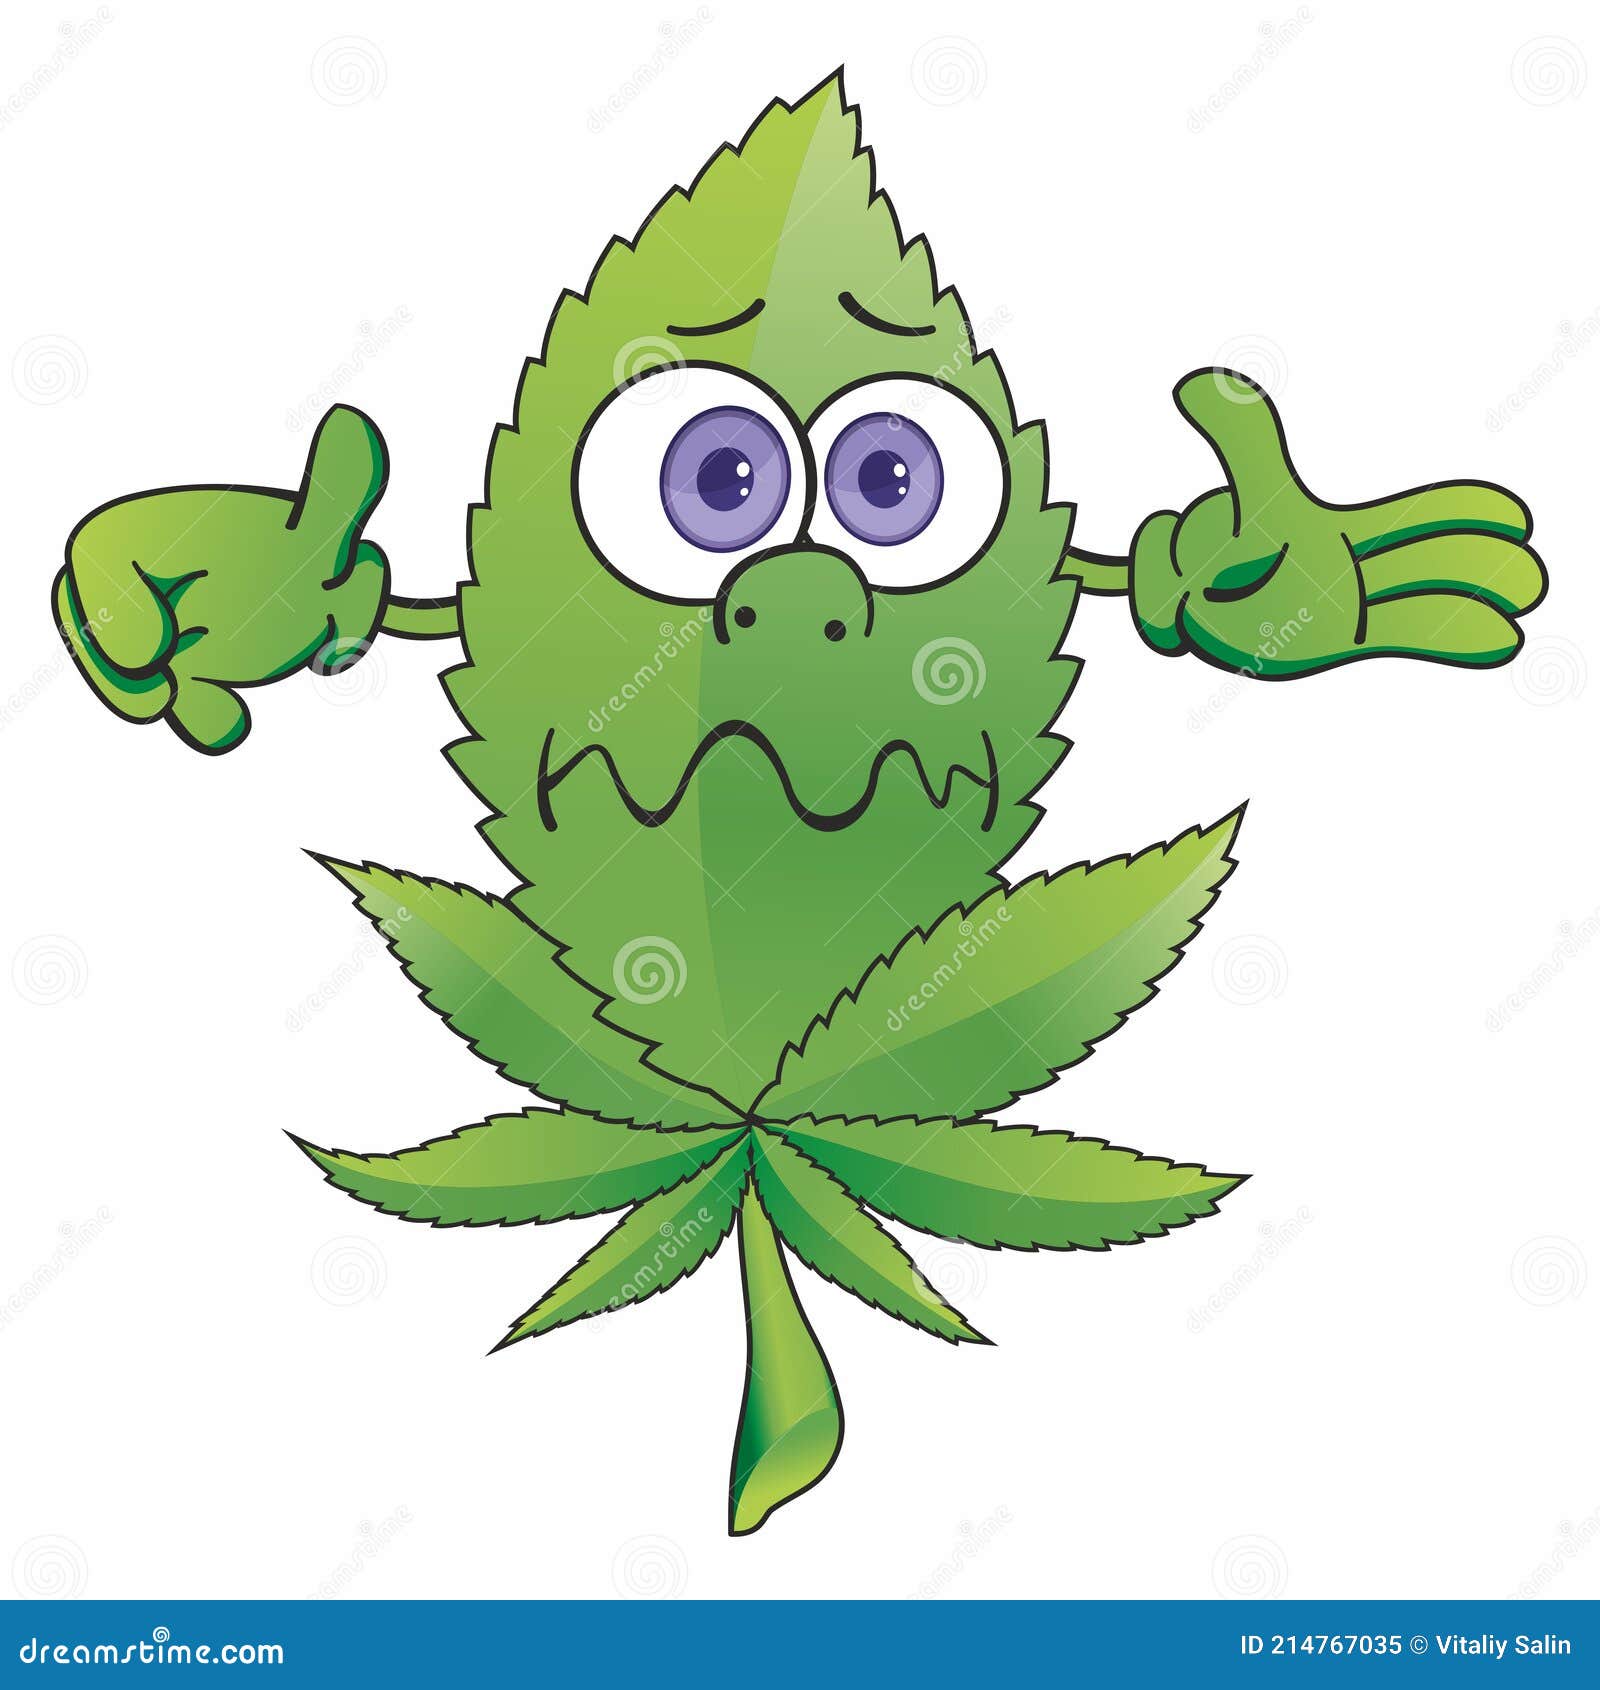 Смешные картинки о марихуане скачать тор браузер бесплатно с официального сайта для андроид hudra